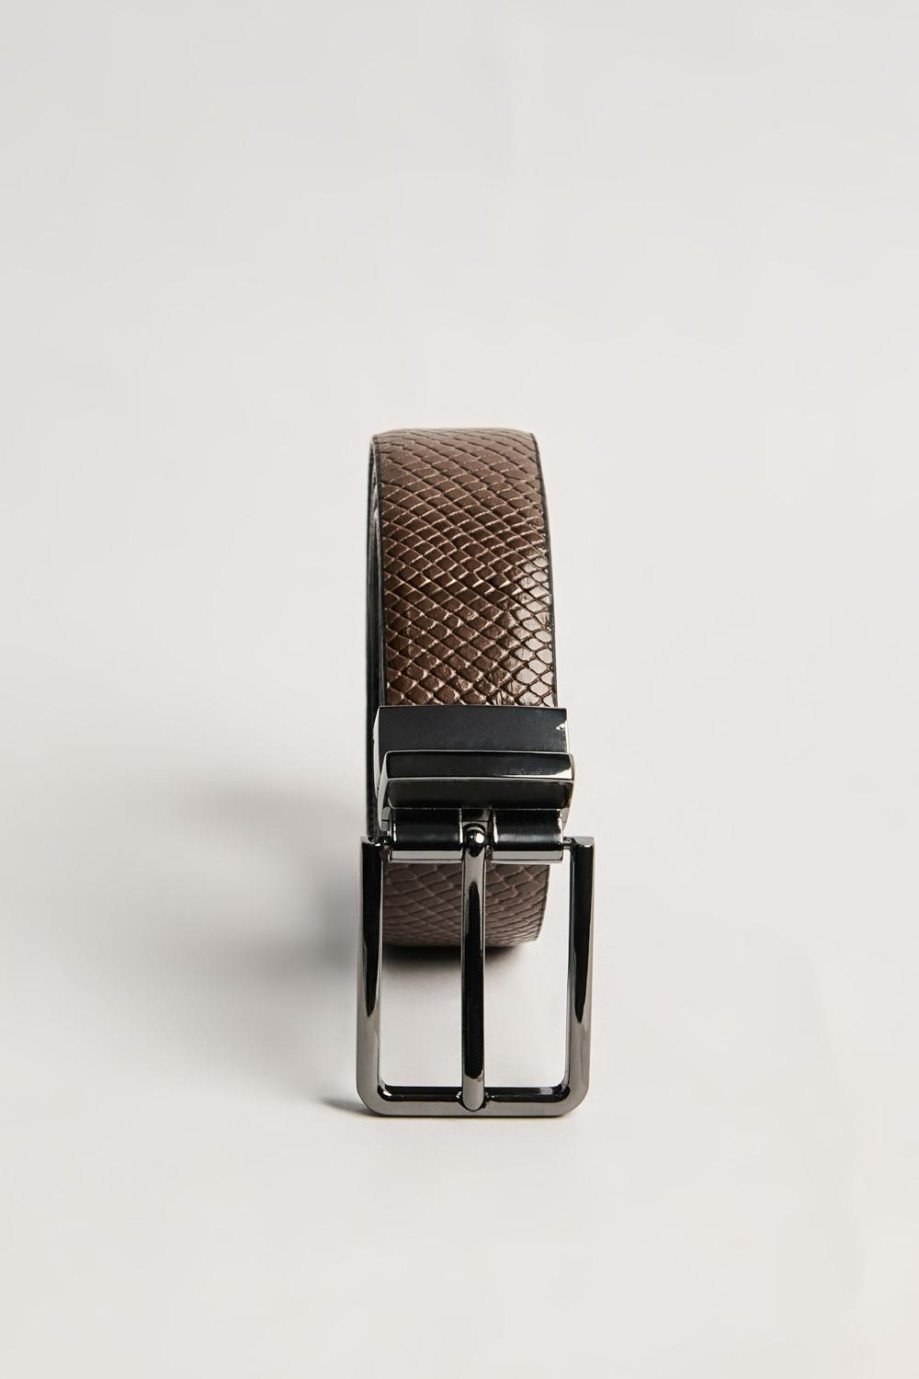 cinturón masculino reversible para hombre, con hebilla cuadrada en color negro y café oscuro.